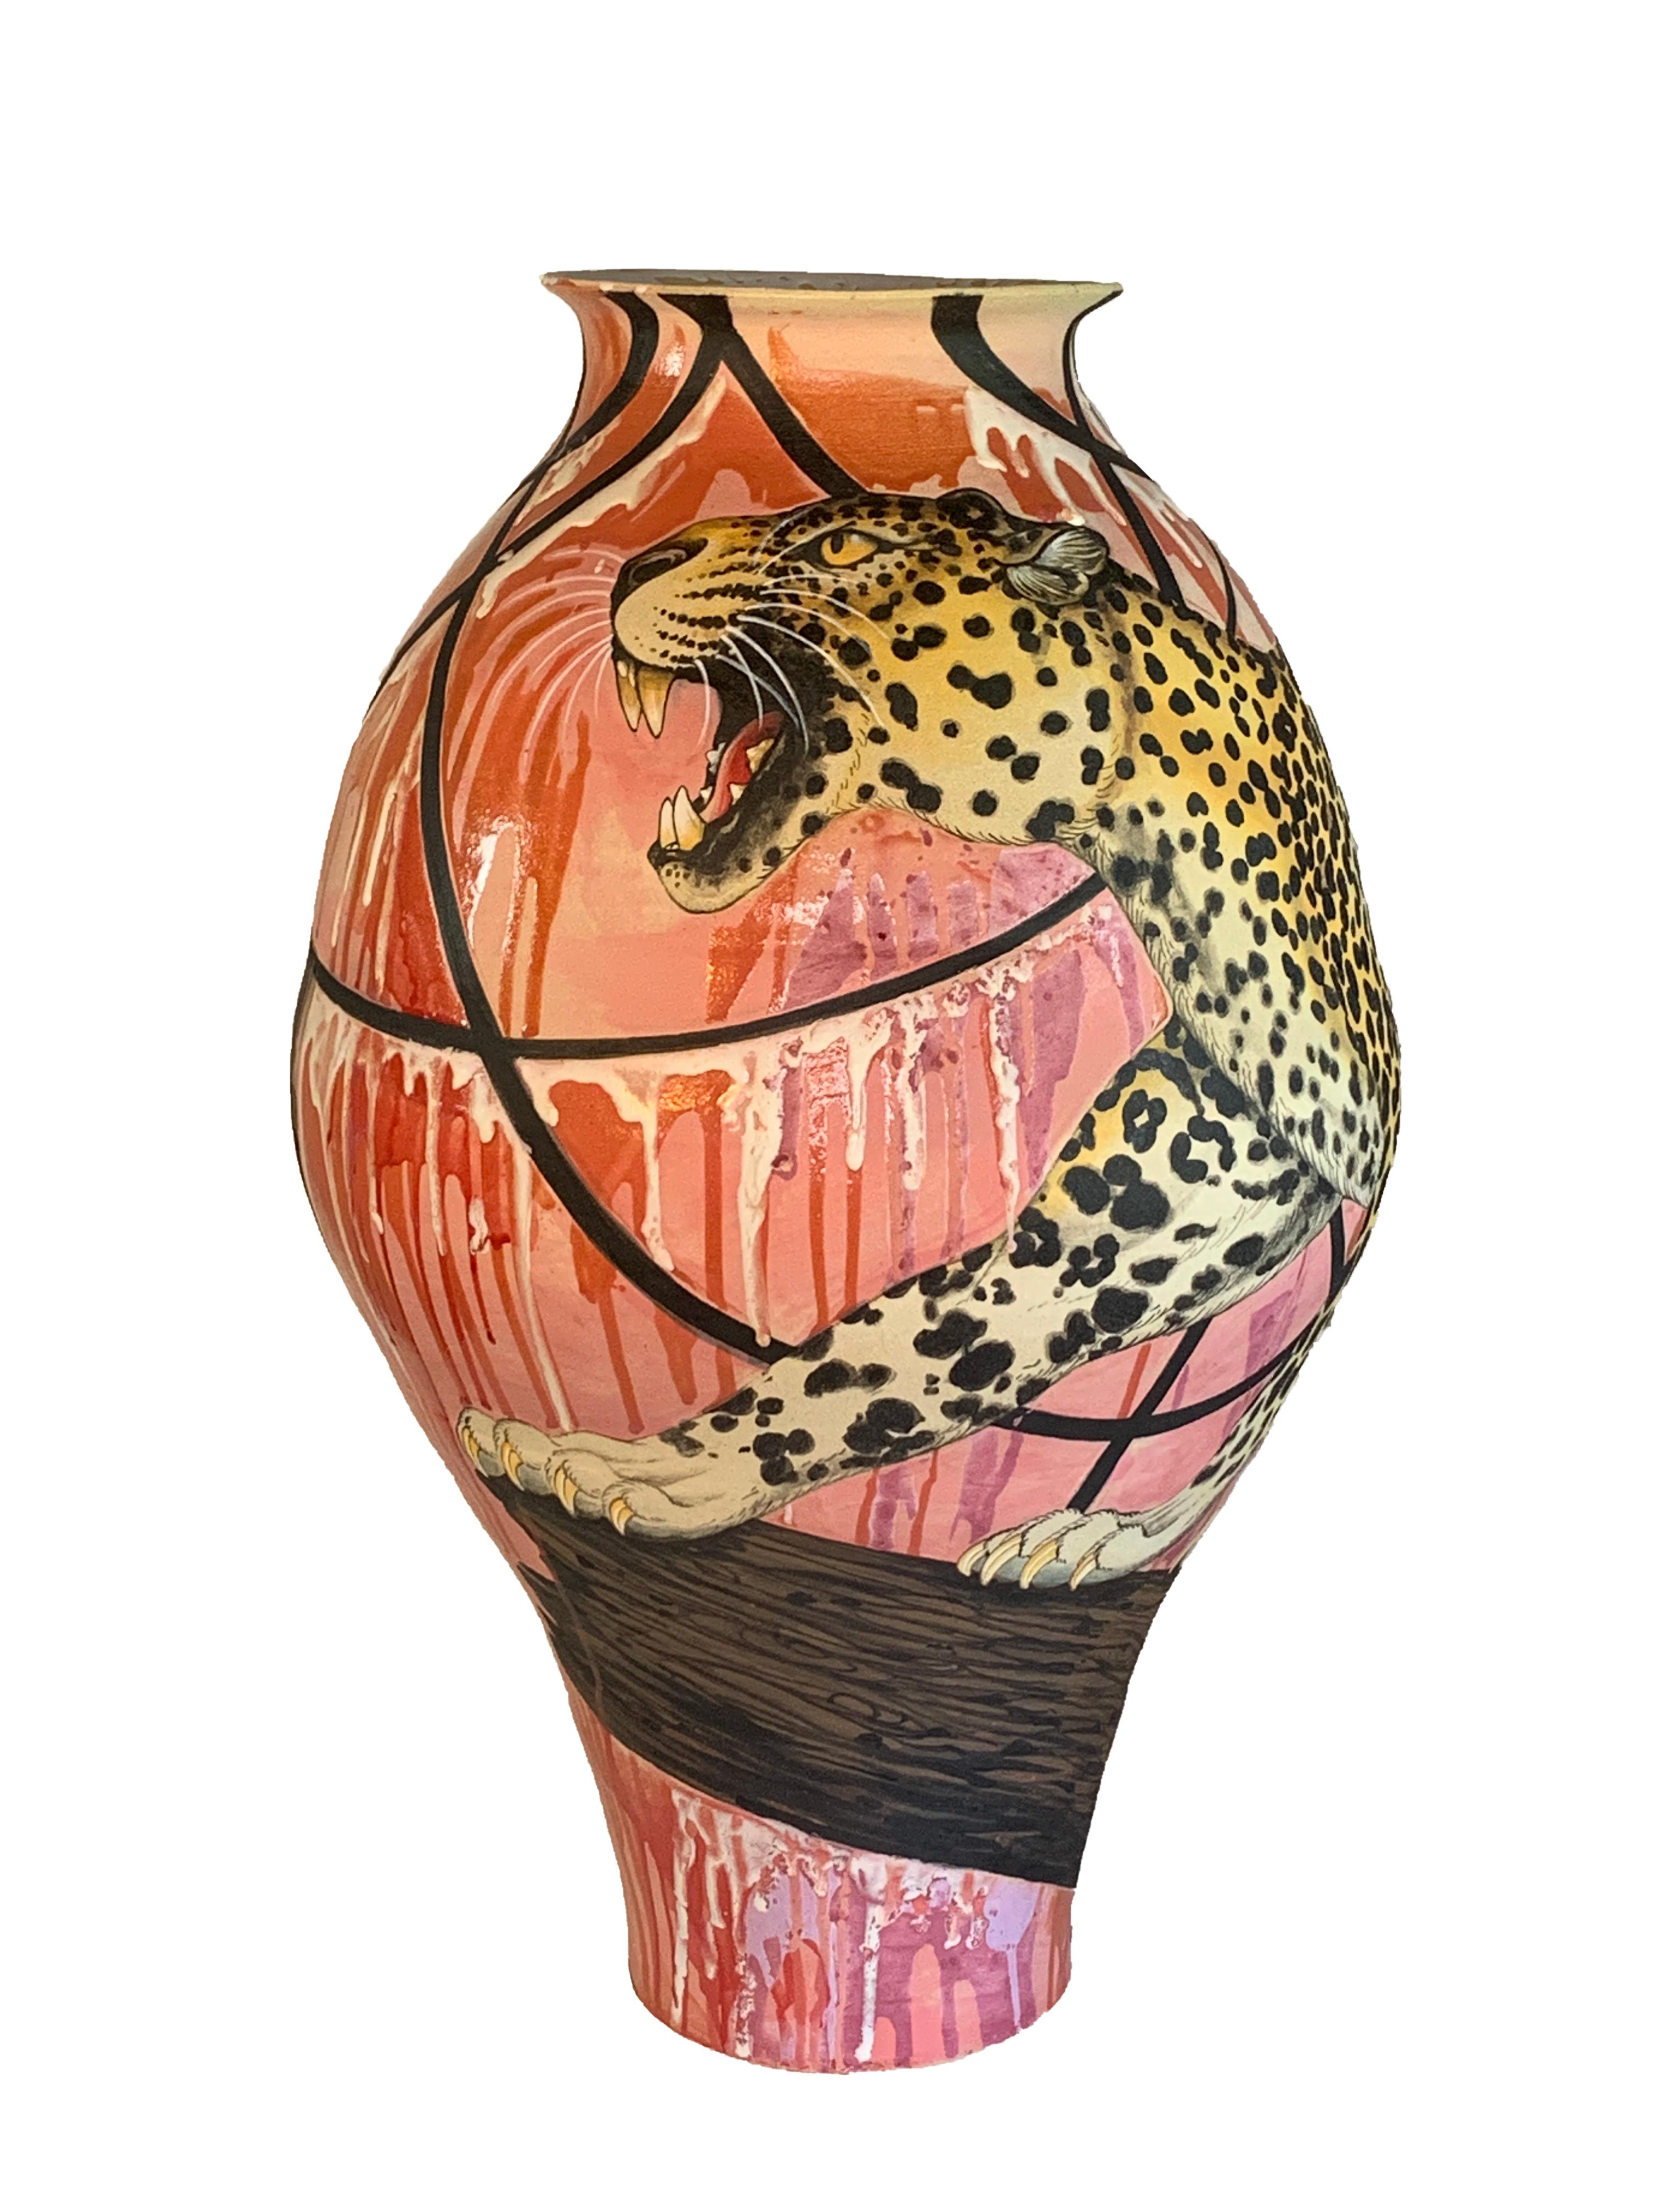 "Mr. Telephone Man", Ceramic Vase Form with Surface Illustration, Glaze, Animals